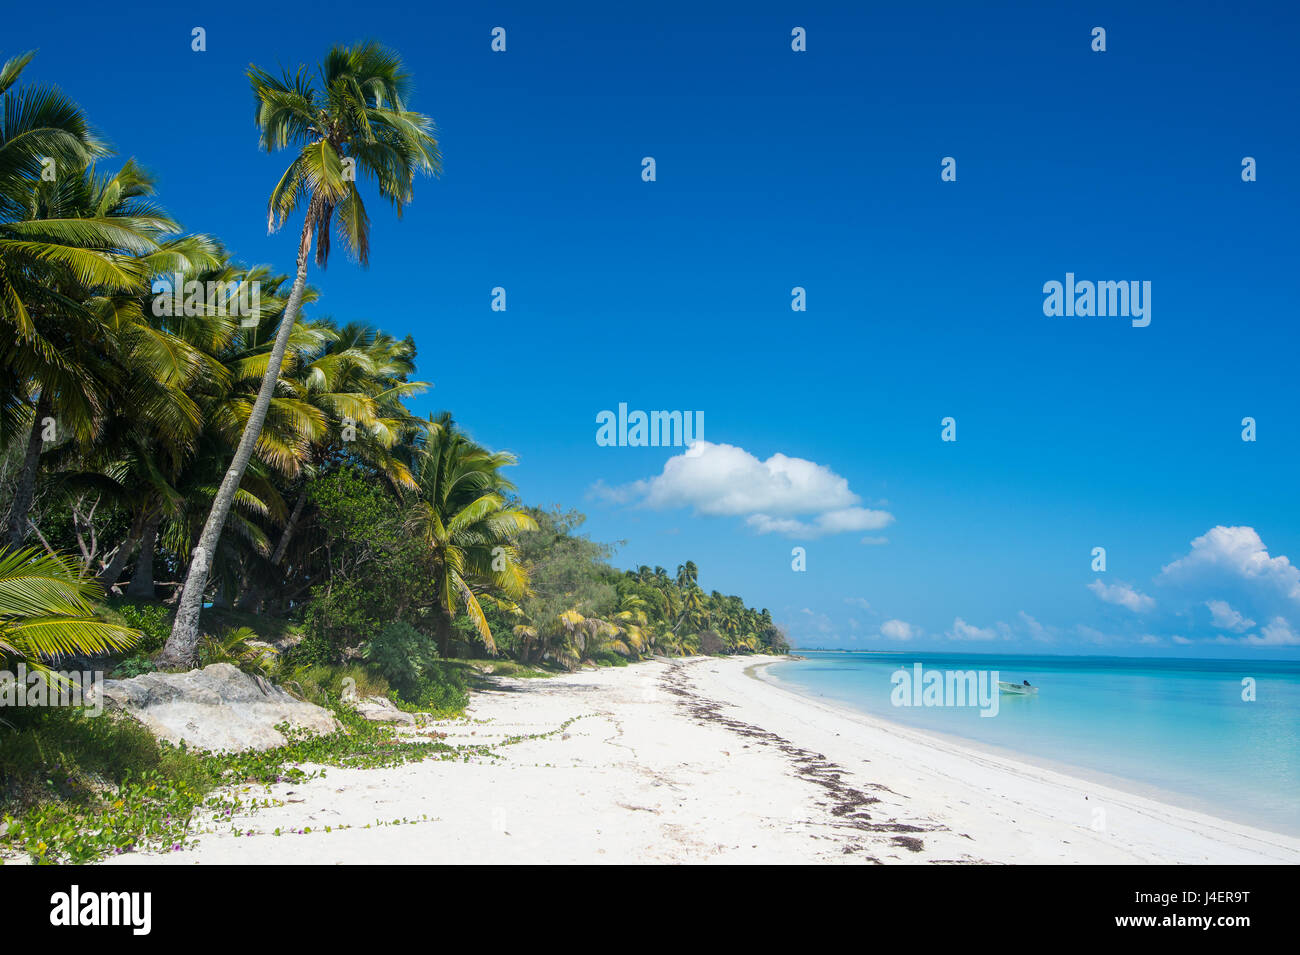 Les eaux turquoise et plage de sable blanc, Ouvéa, Îles Loyauté, Nouvelle-Calédonie, Pacifique Banque D'Images